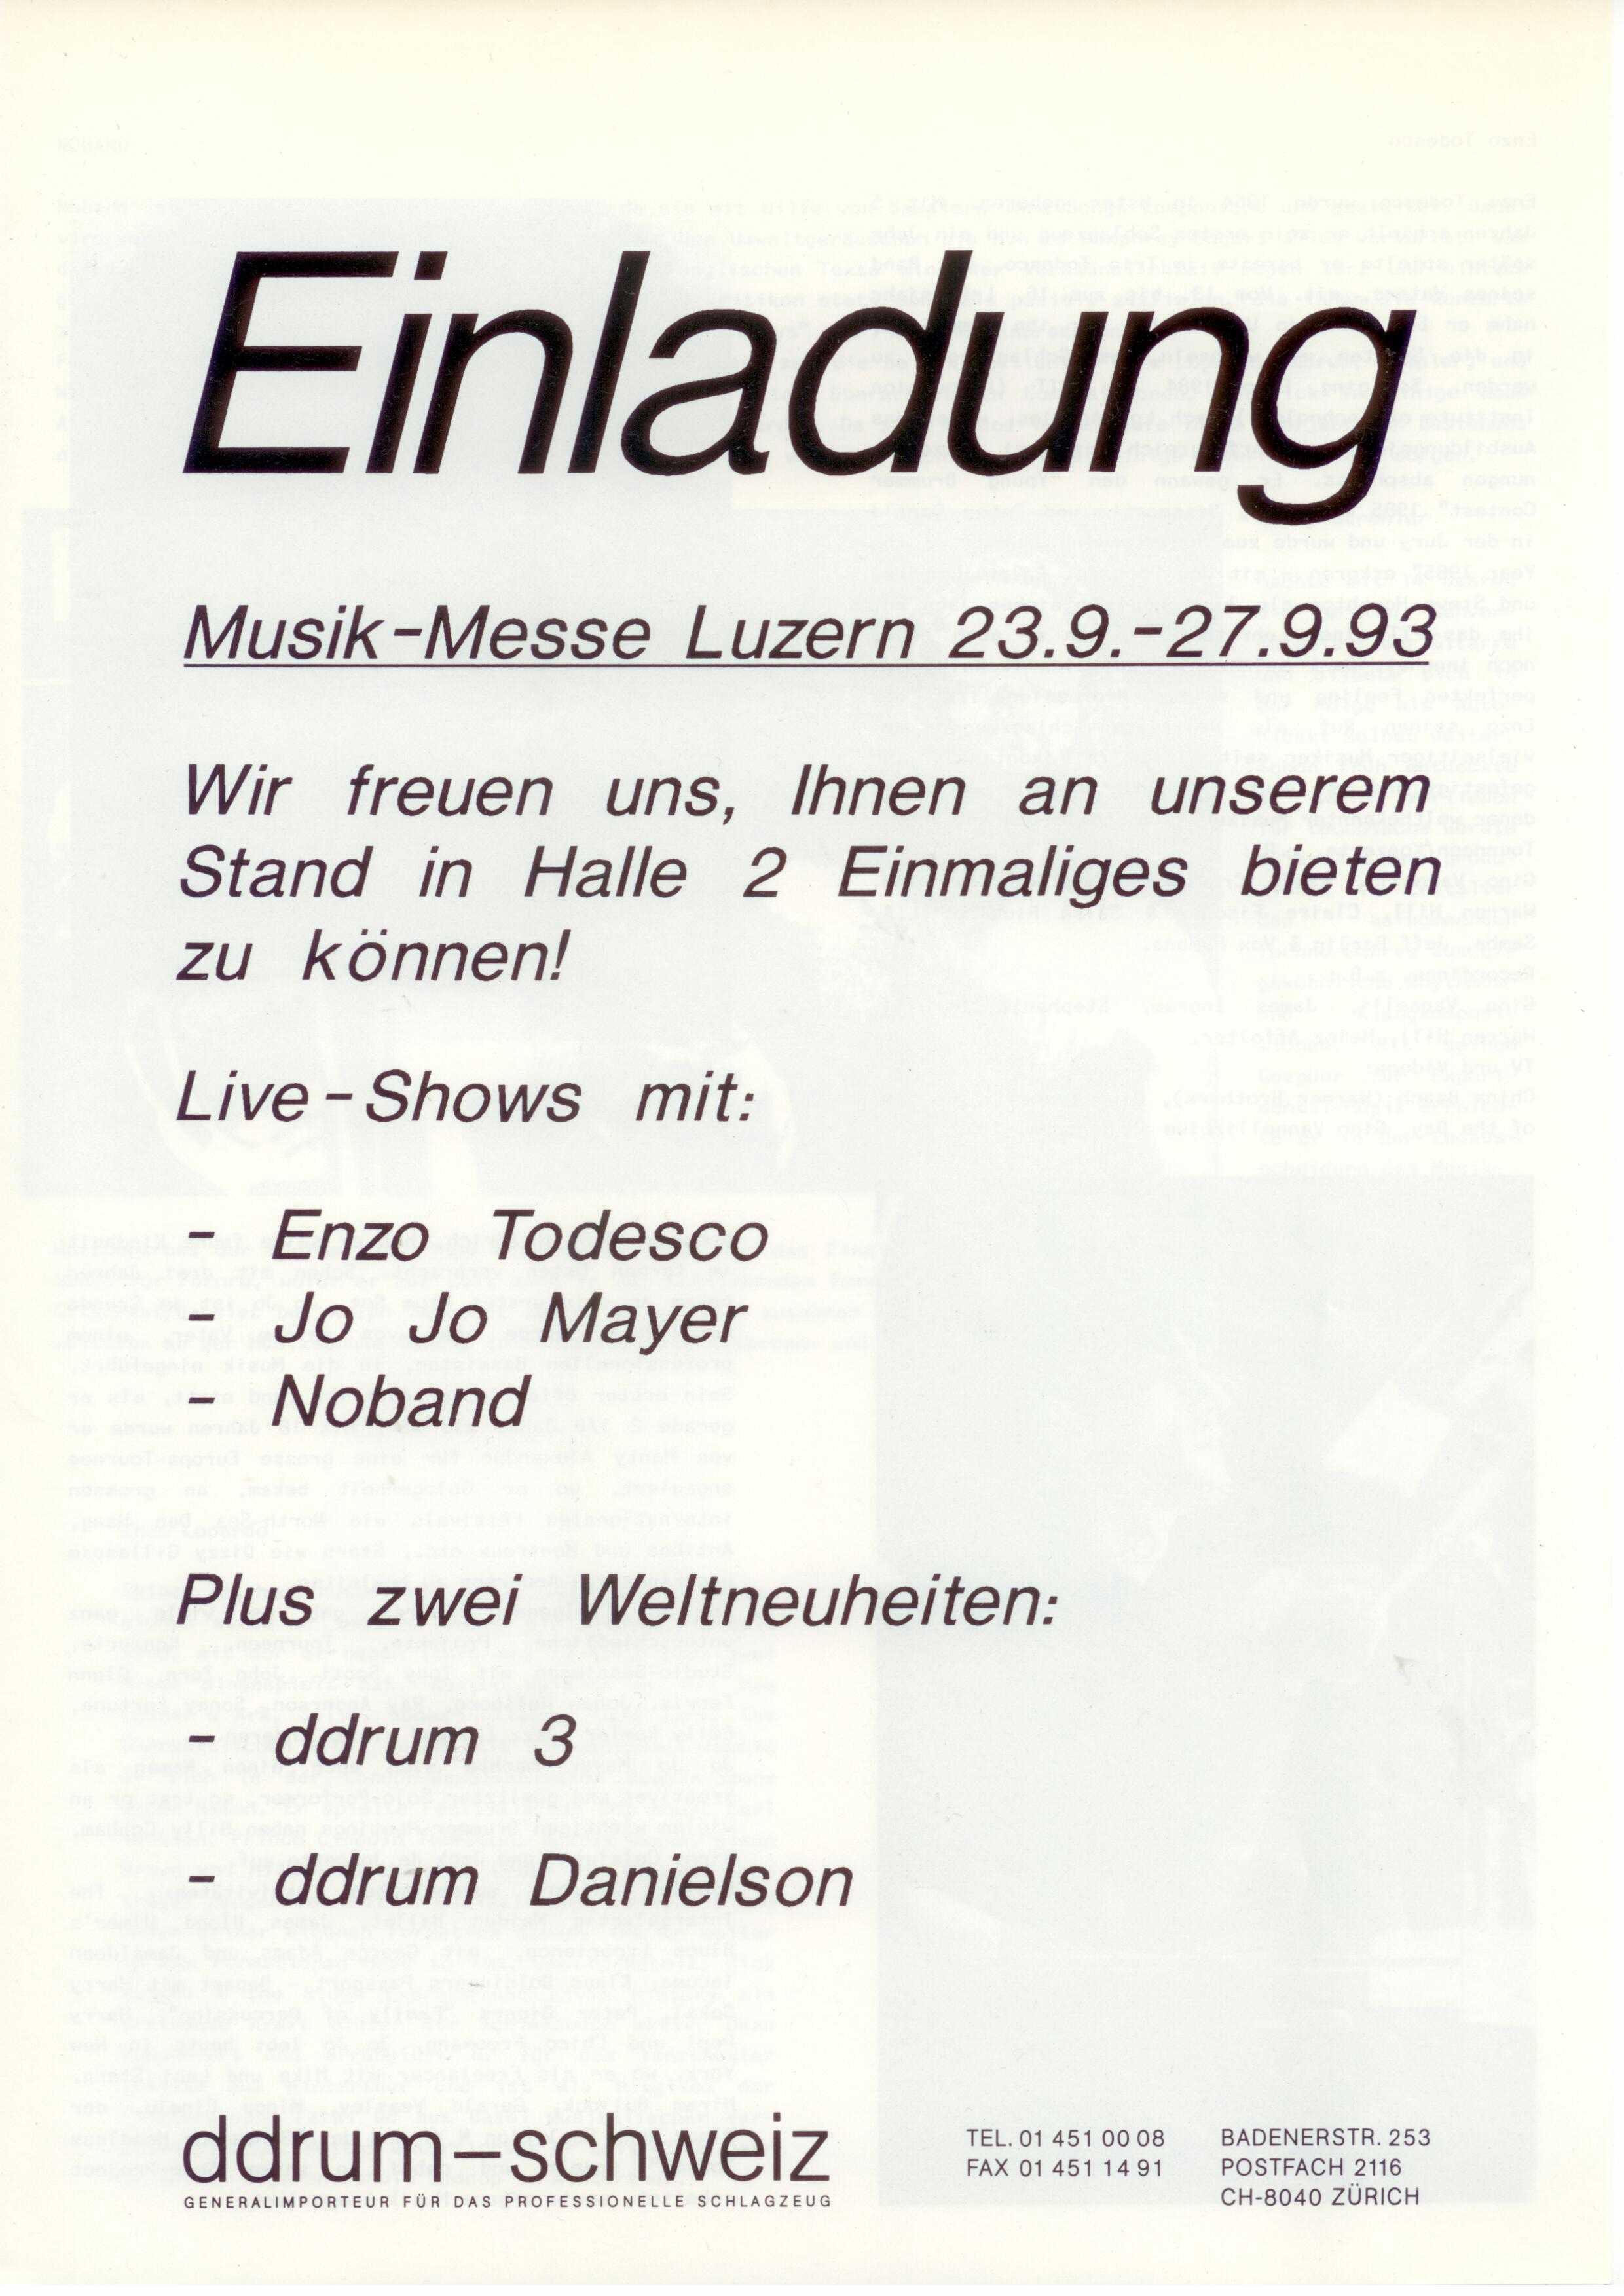 Foto-Einladung-Musik-Messe-Allmend-Luzern-ddrum-schweiz